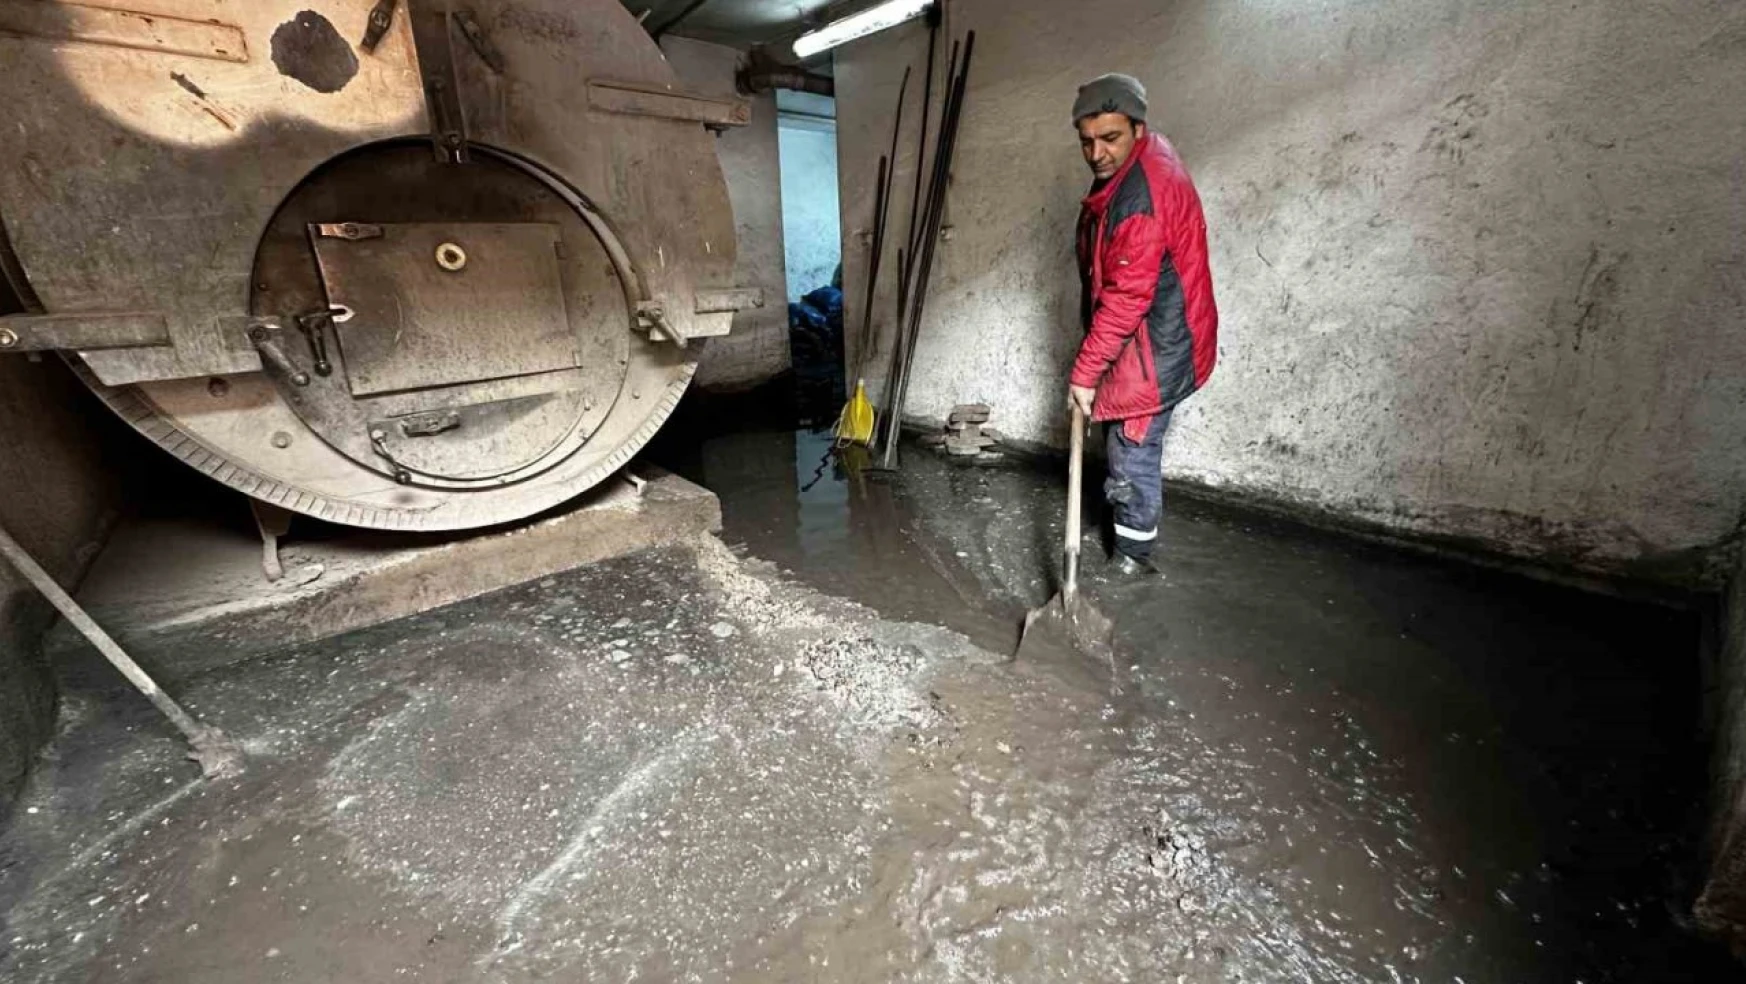 Yüksekova'da yoğun yağışlar sonrası binanın kalorifer dairesi sular altında kaldı